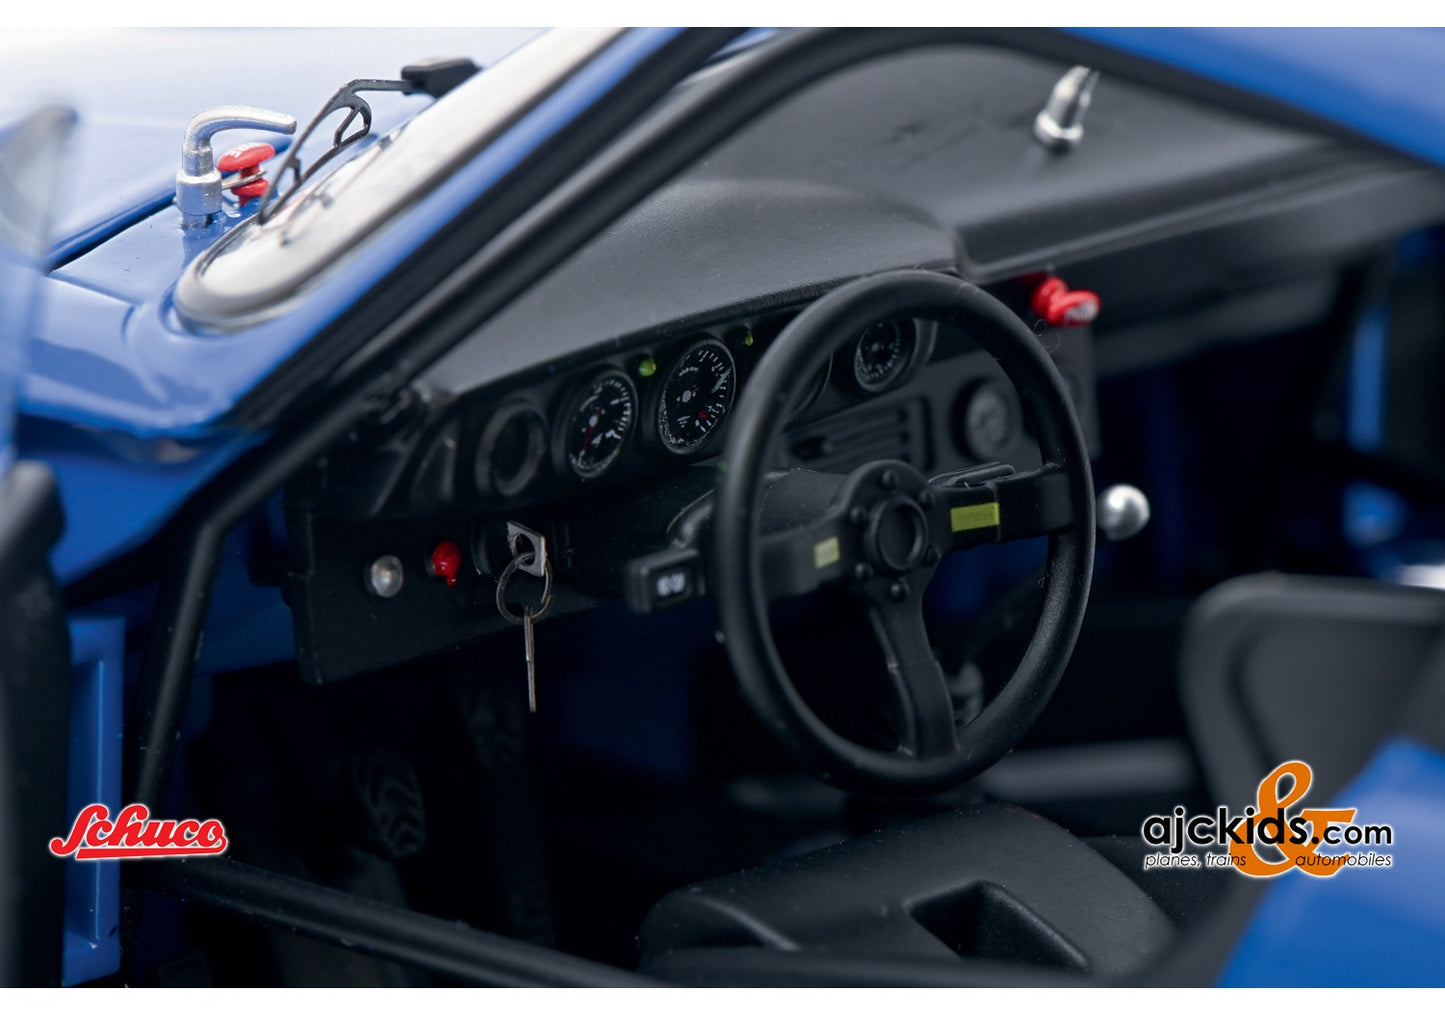 Schuco 450034100 - Porsche 934 RSR blue 1:18